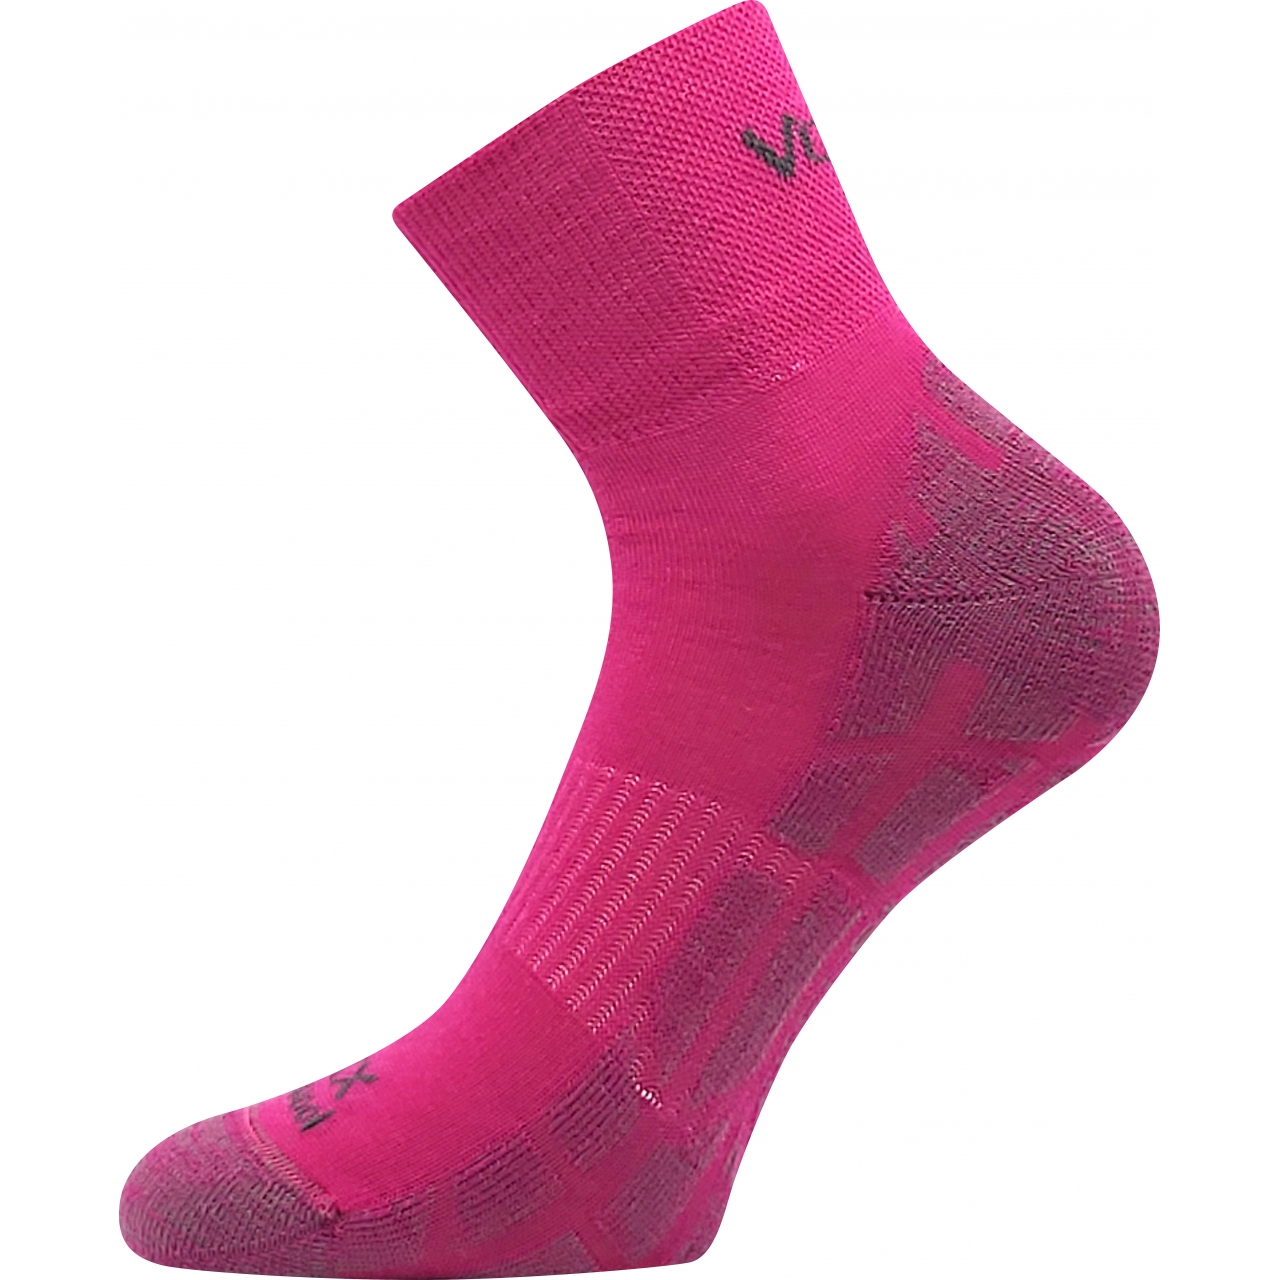 Ponožky unisex sportovní Voxx Twarix short - růžové, 39-42